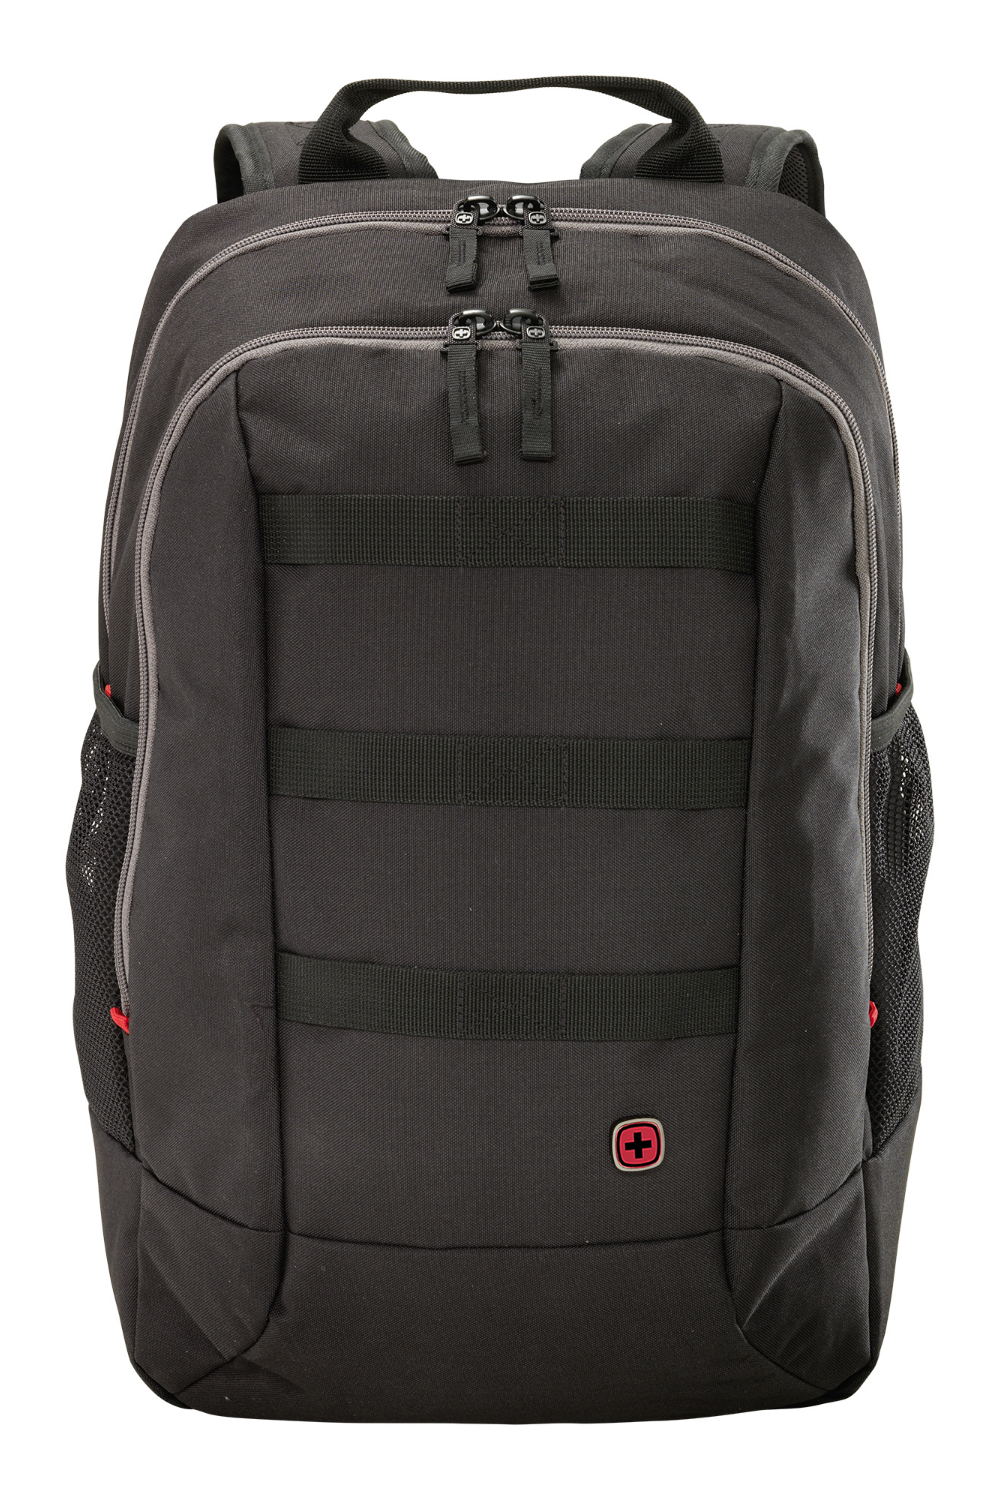 Wenger Road Jumper Essential 16” Laptop Backpack by Wenger (604429)